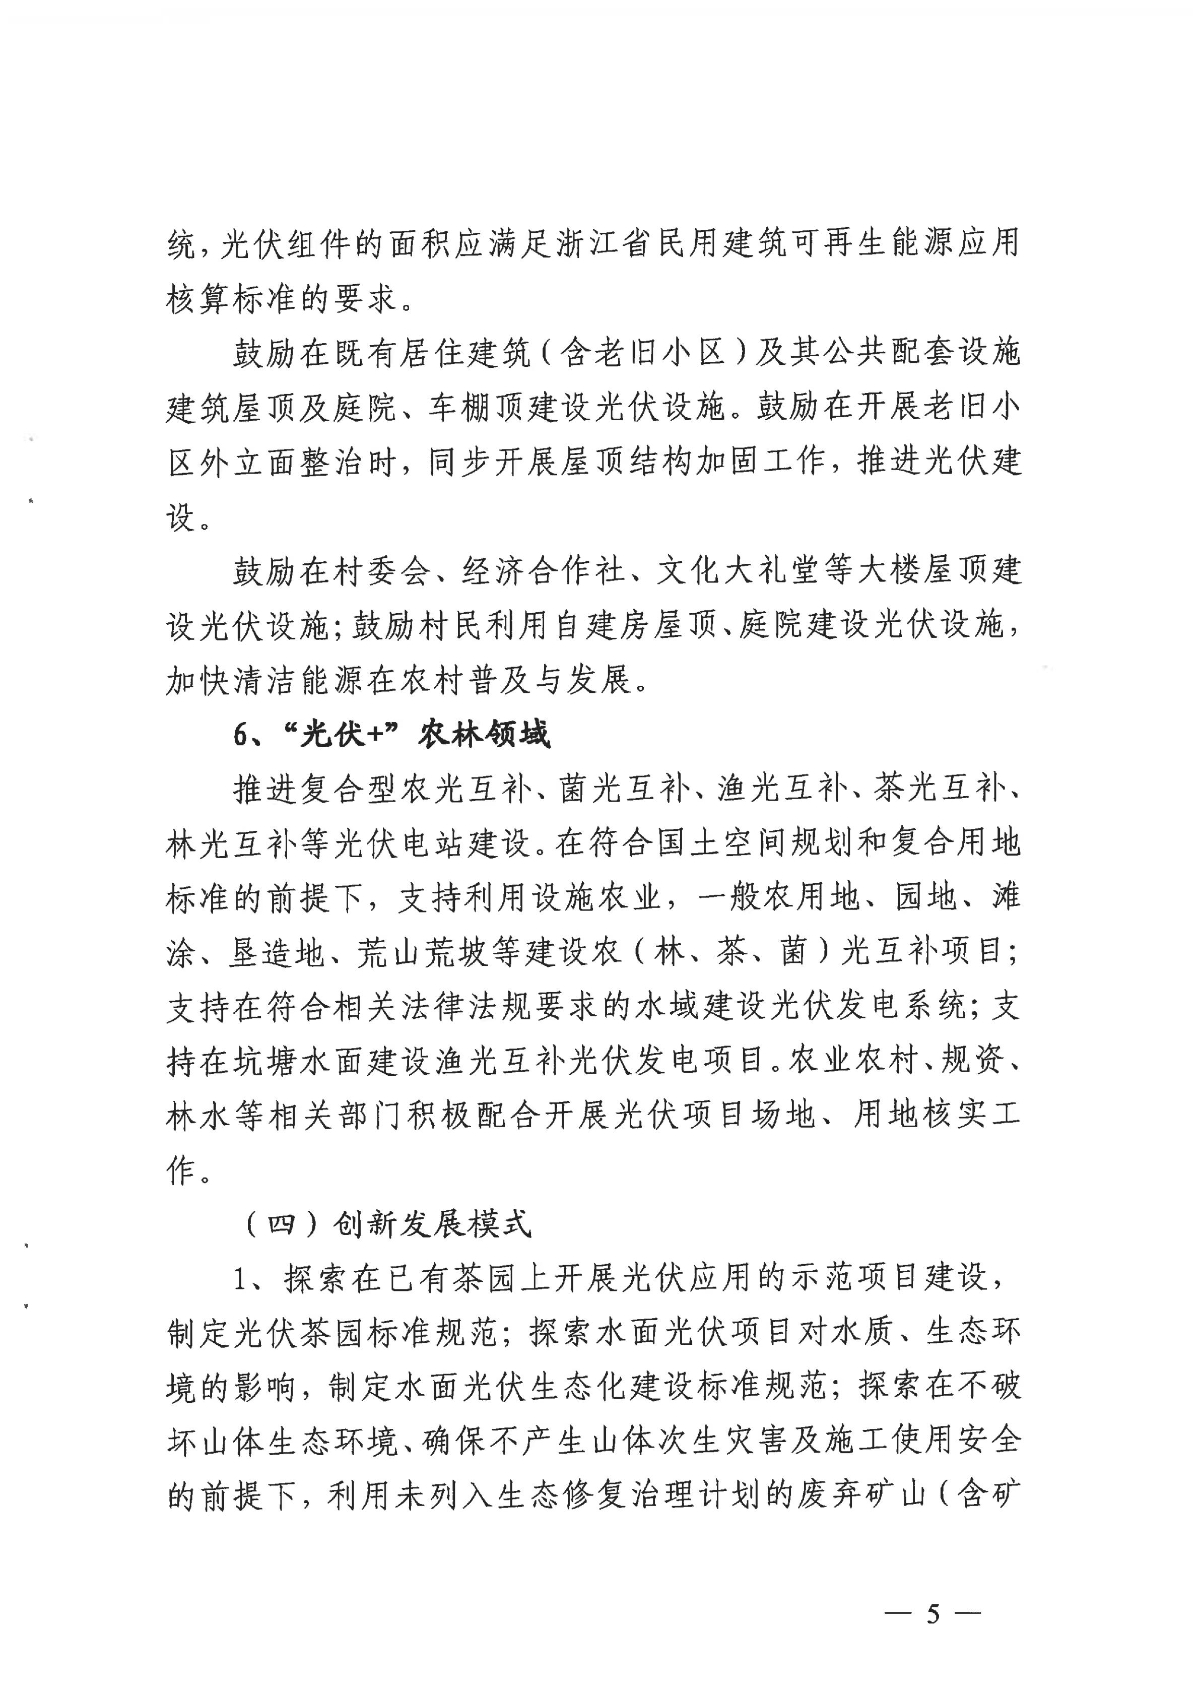 1128关于印发《关于进一步加快杭州市光伏发电项目建设的实施意见》的通知_04.jpg